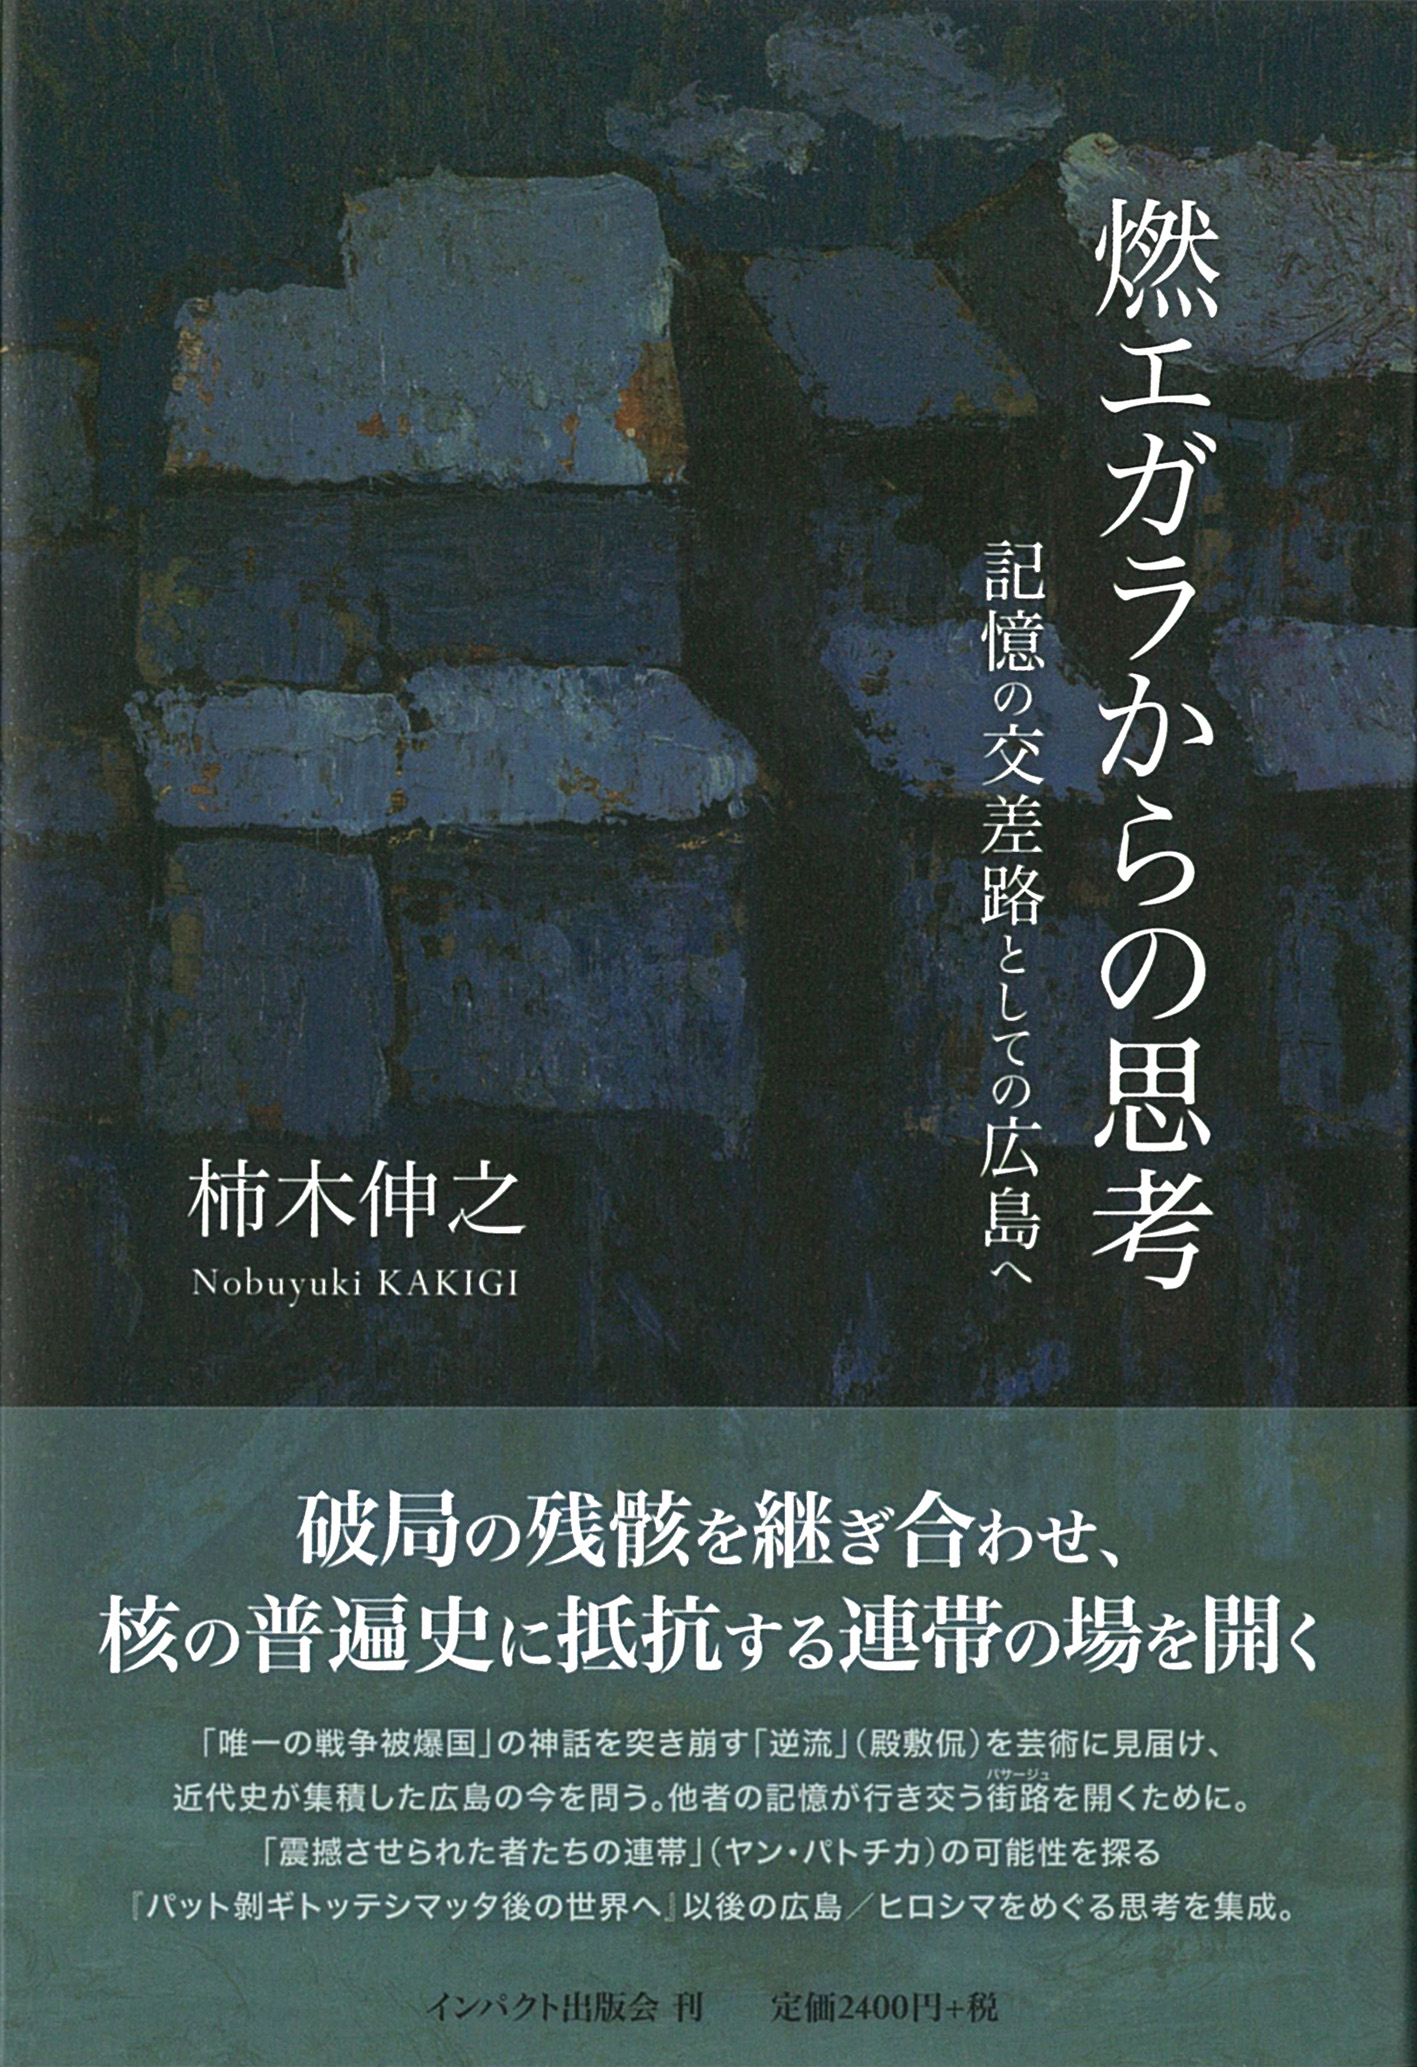 燃エガラからの思考──記憶の交差路としての広島へ / インパクト出版会